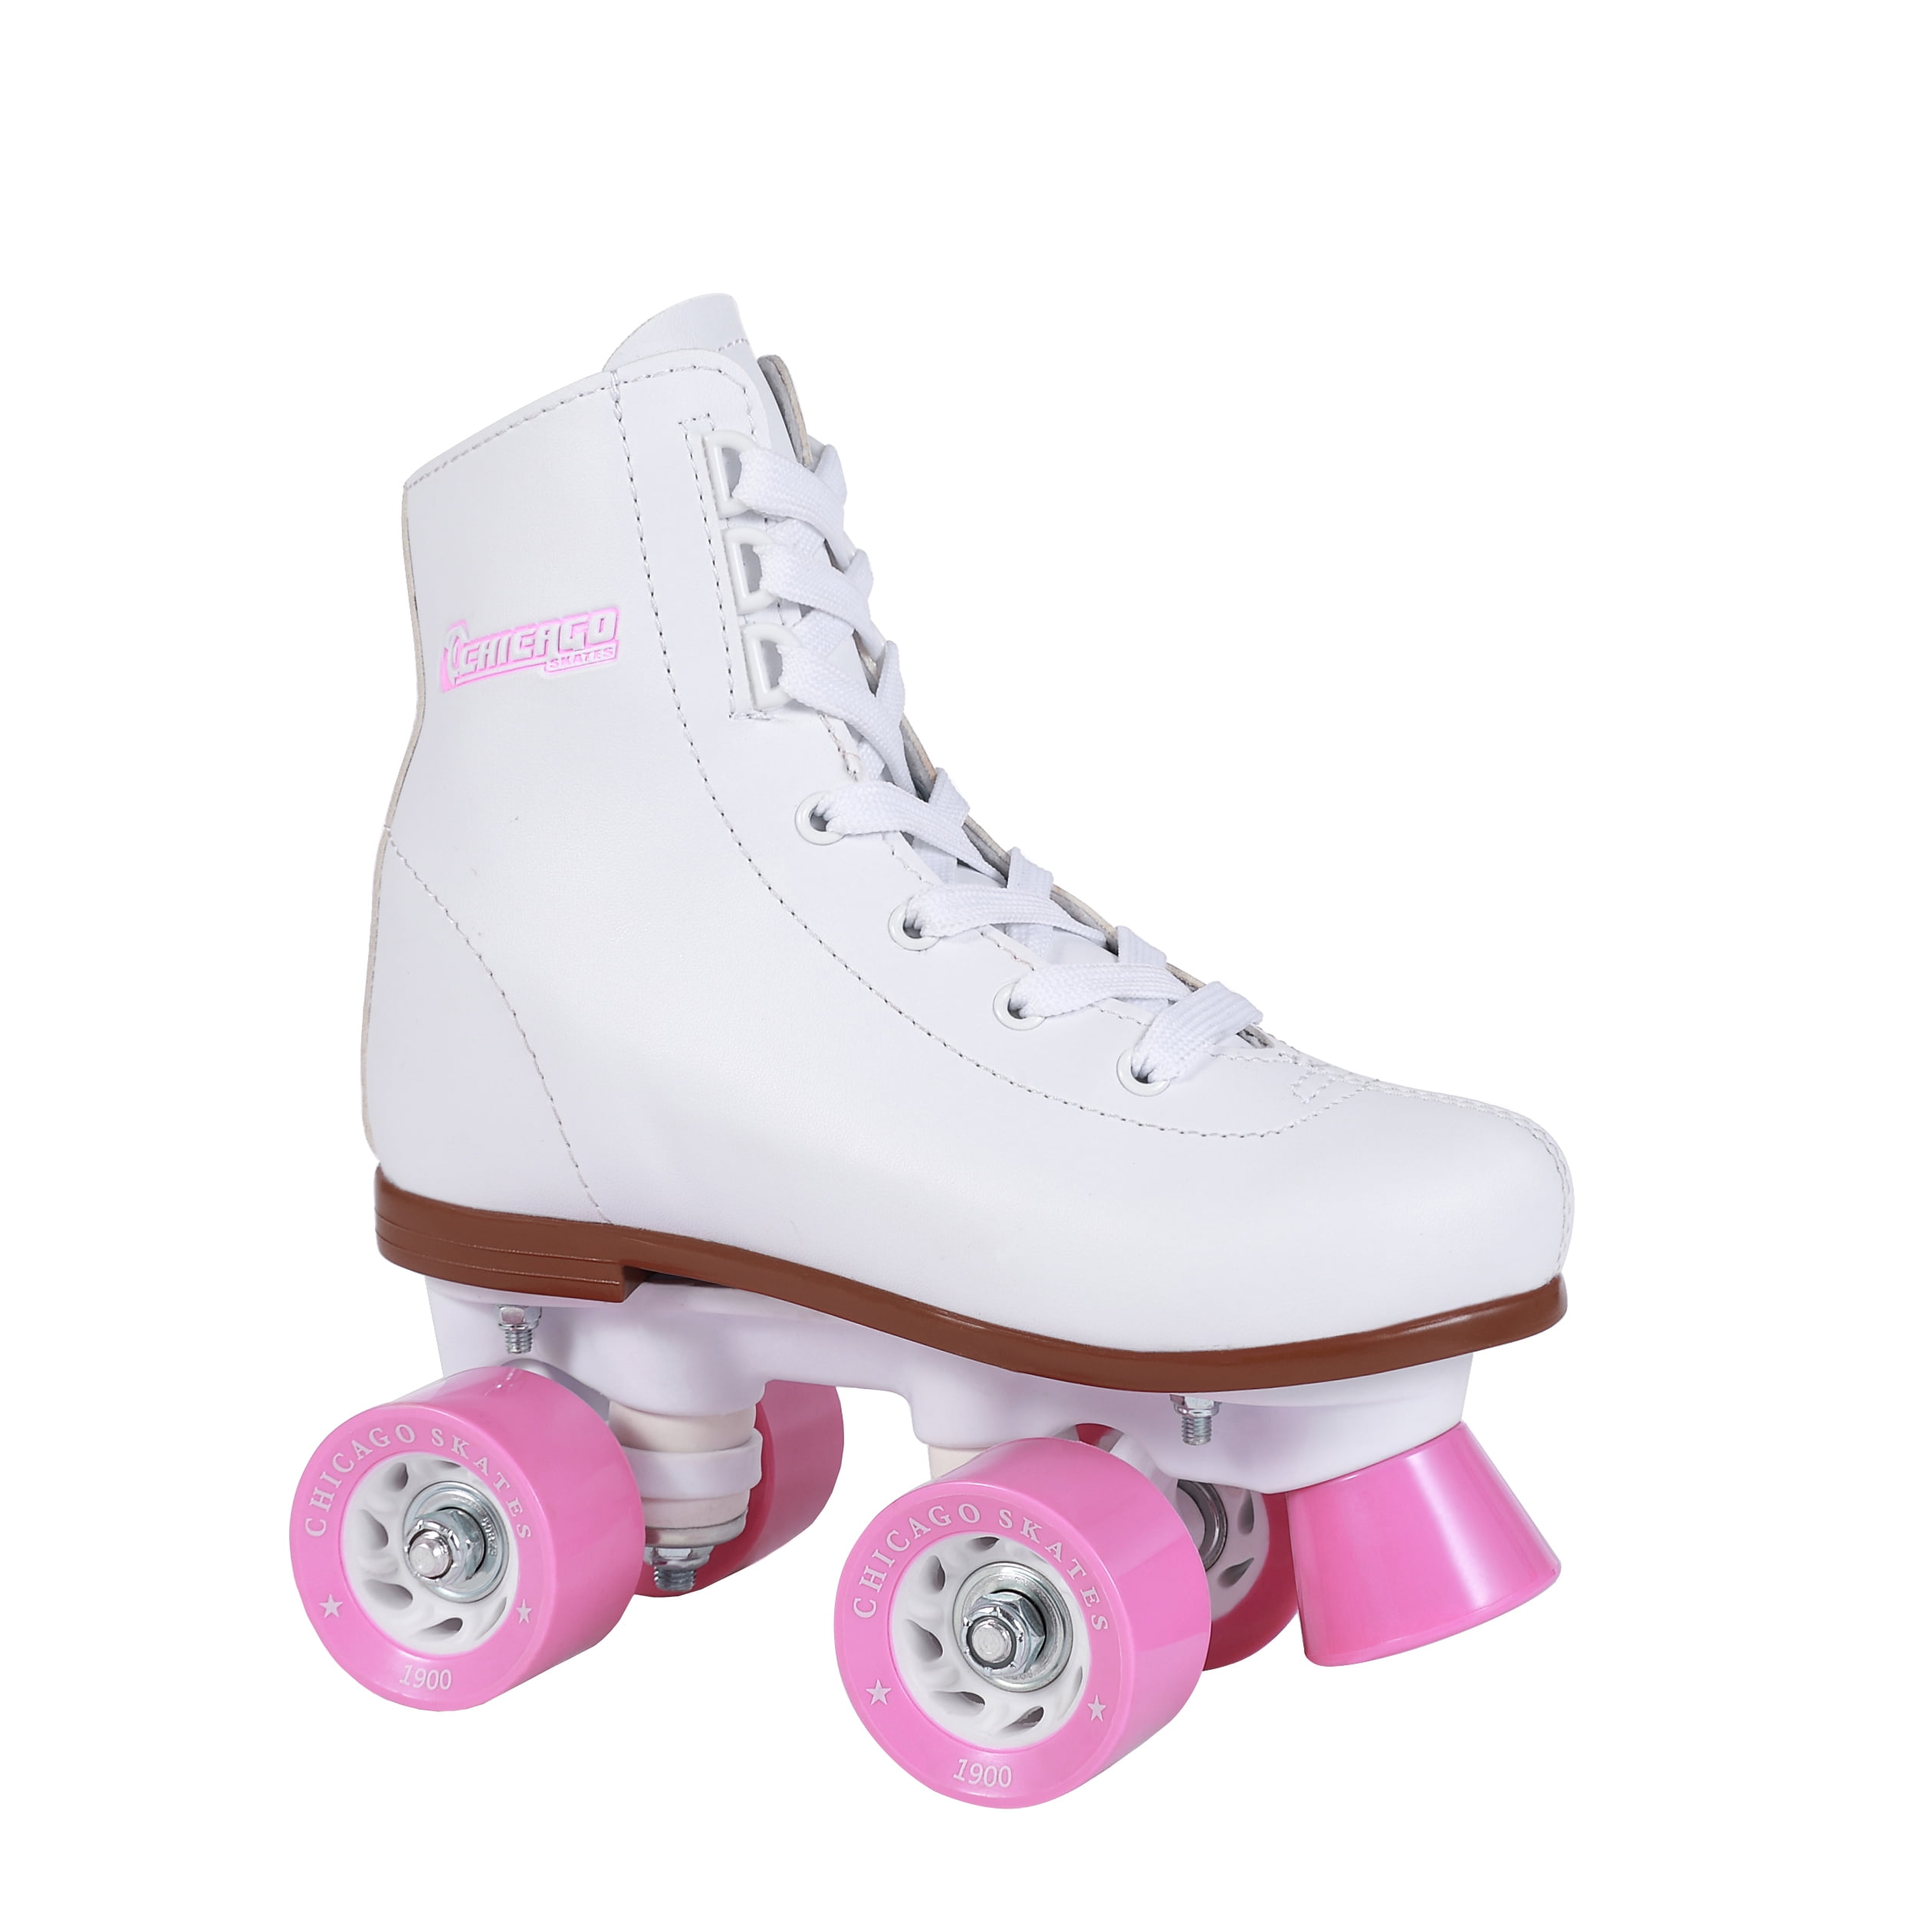 White J11 Chicago Skates Girls Rink Roller Skate CRS1900J11 for sale online 